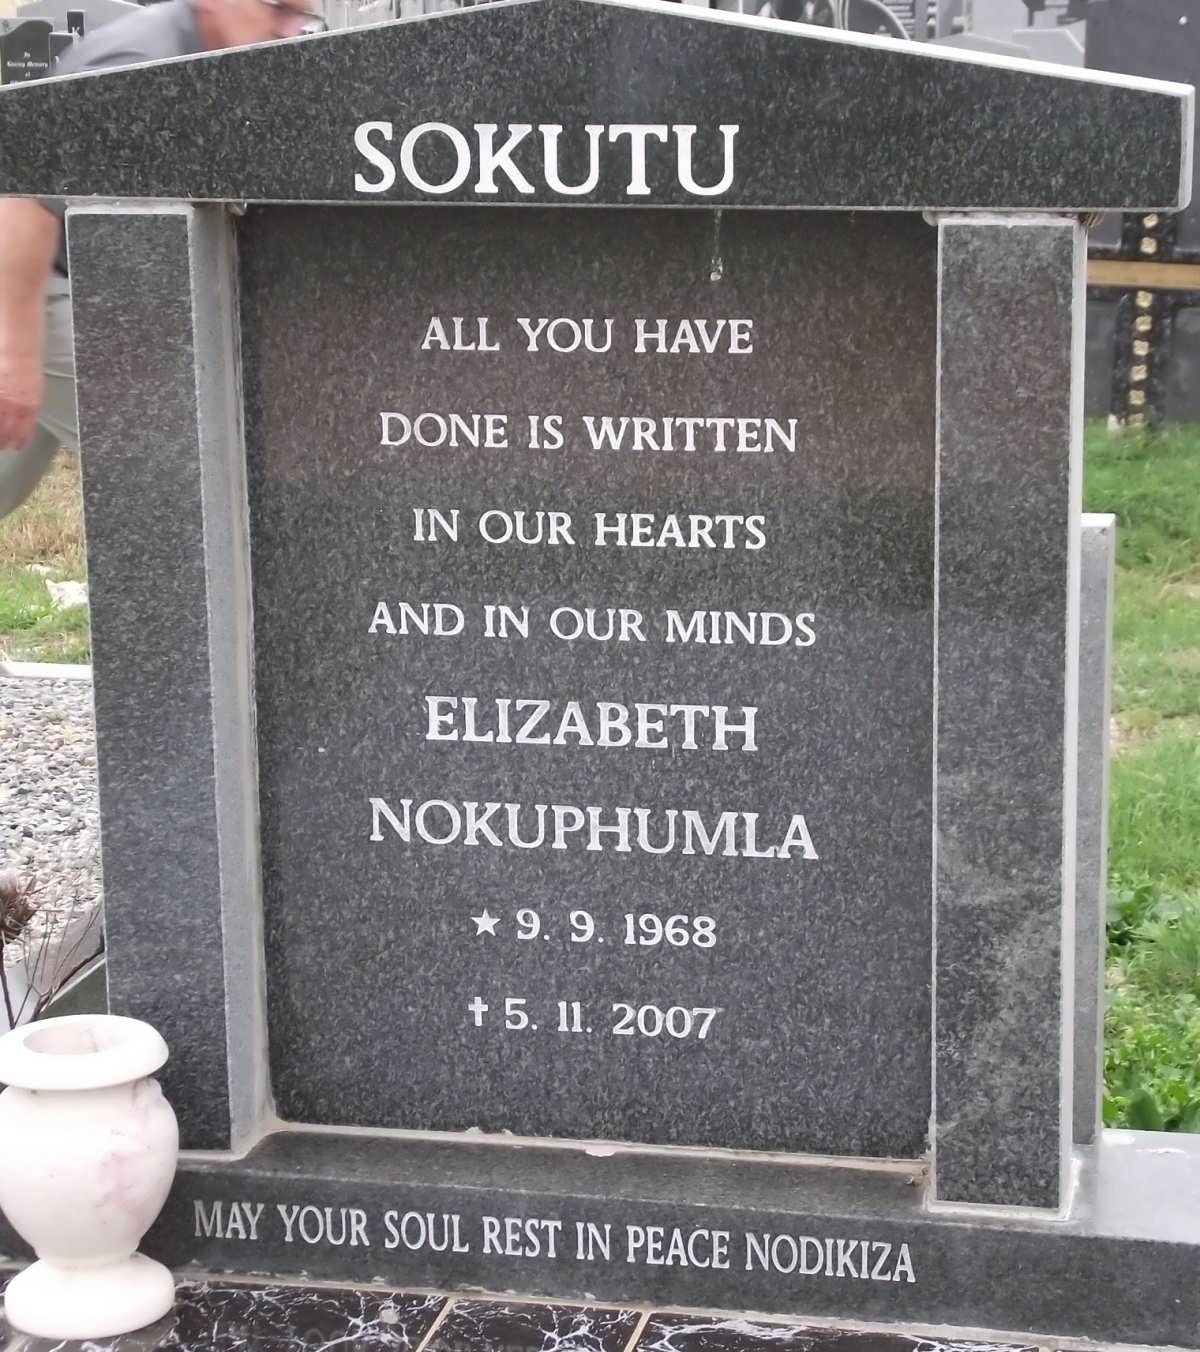 SOKUTU Elizabeth Nokuphumla 1968-2007